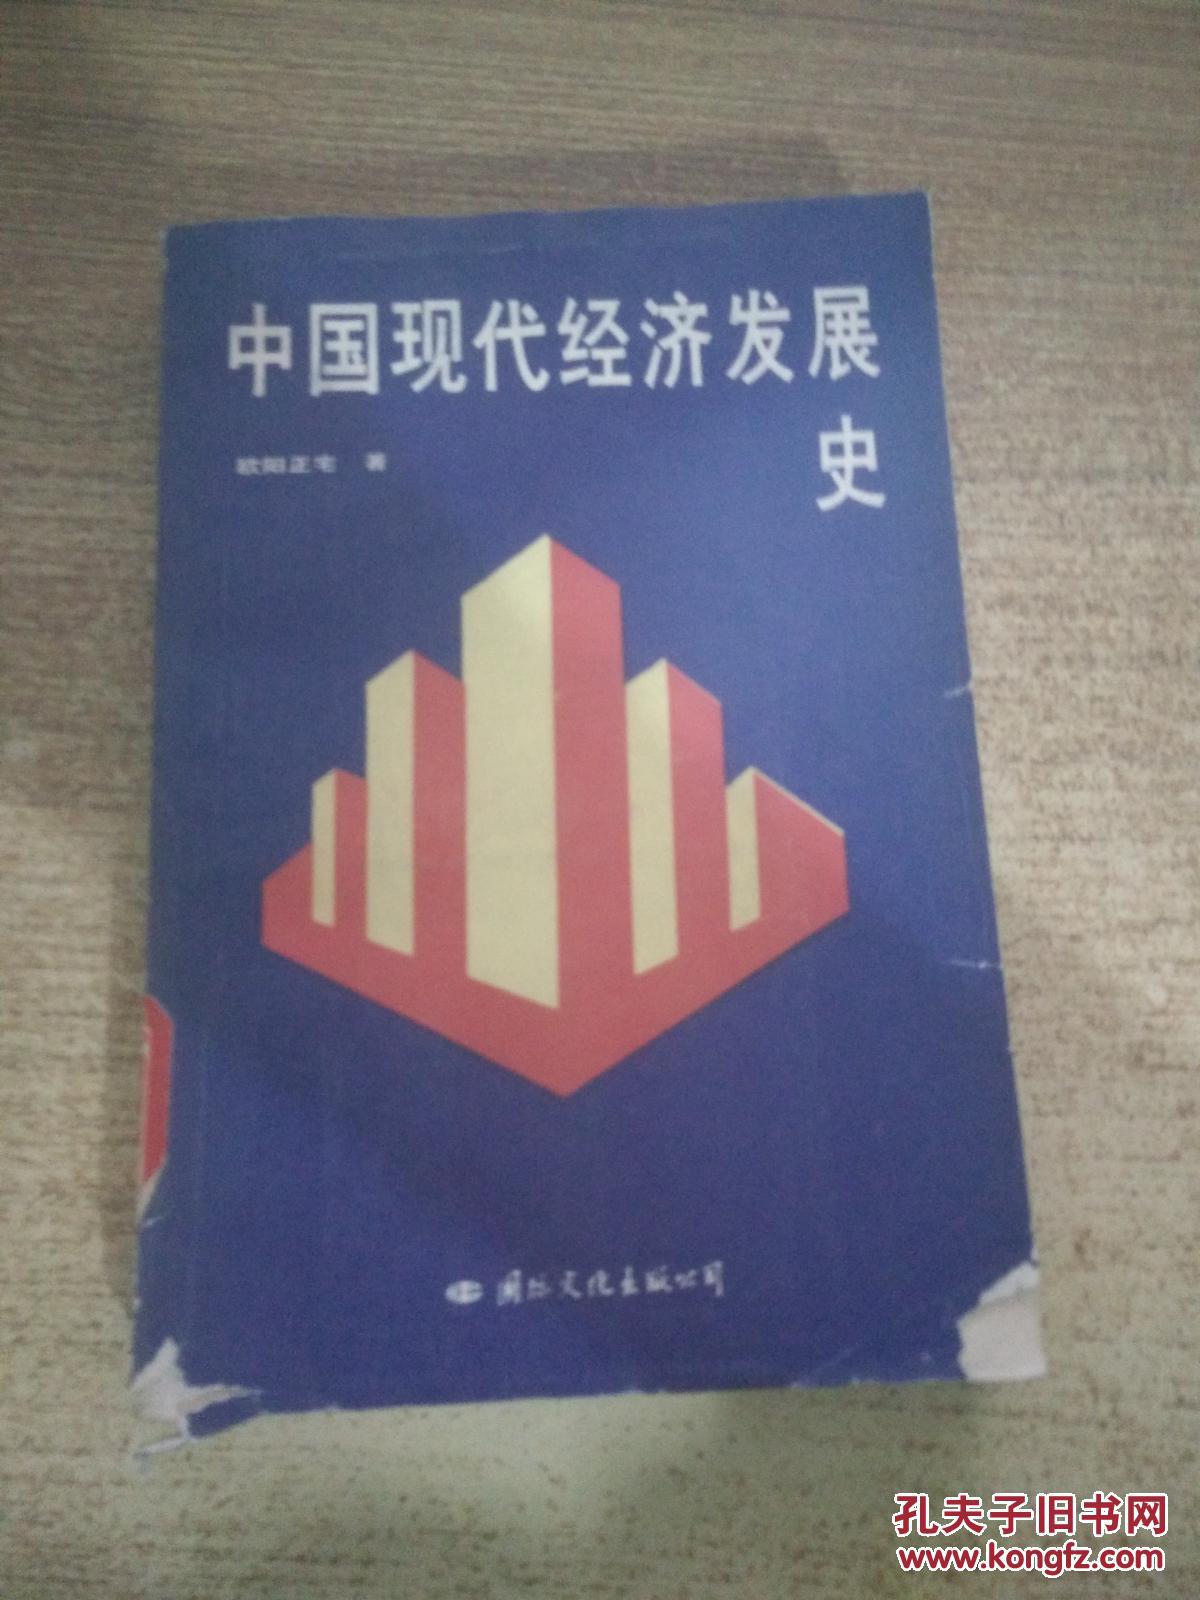 中国现代经济发展史